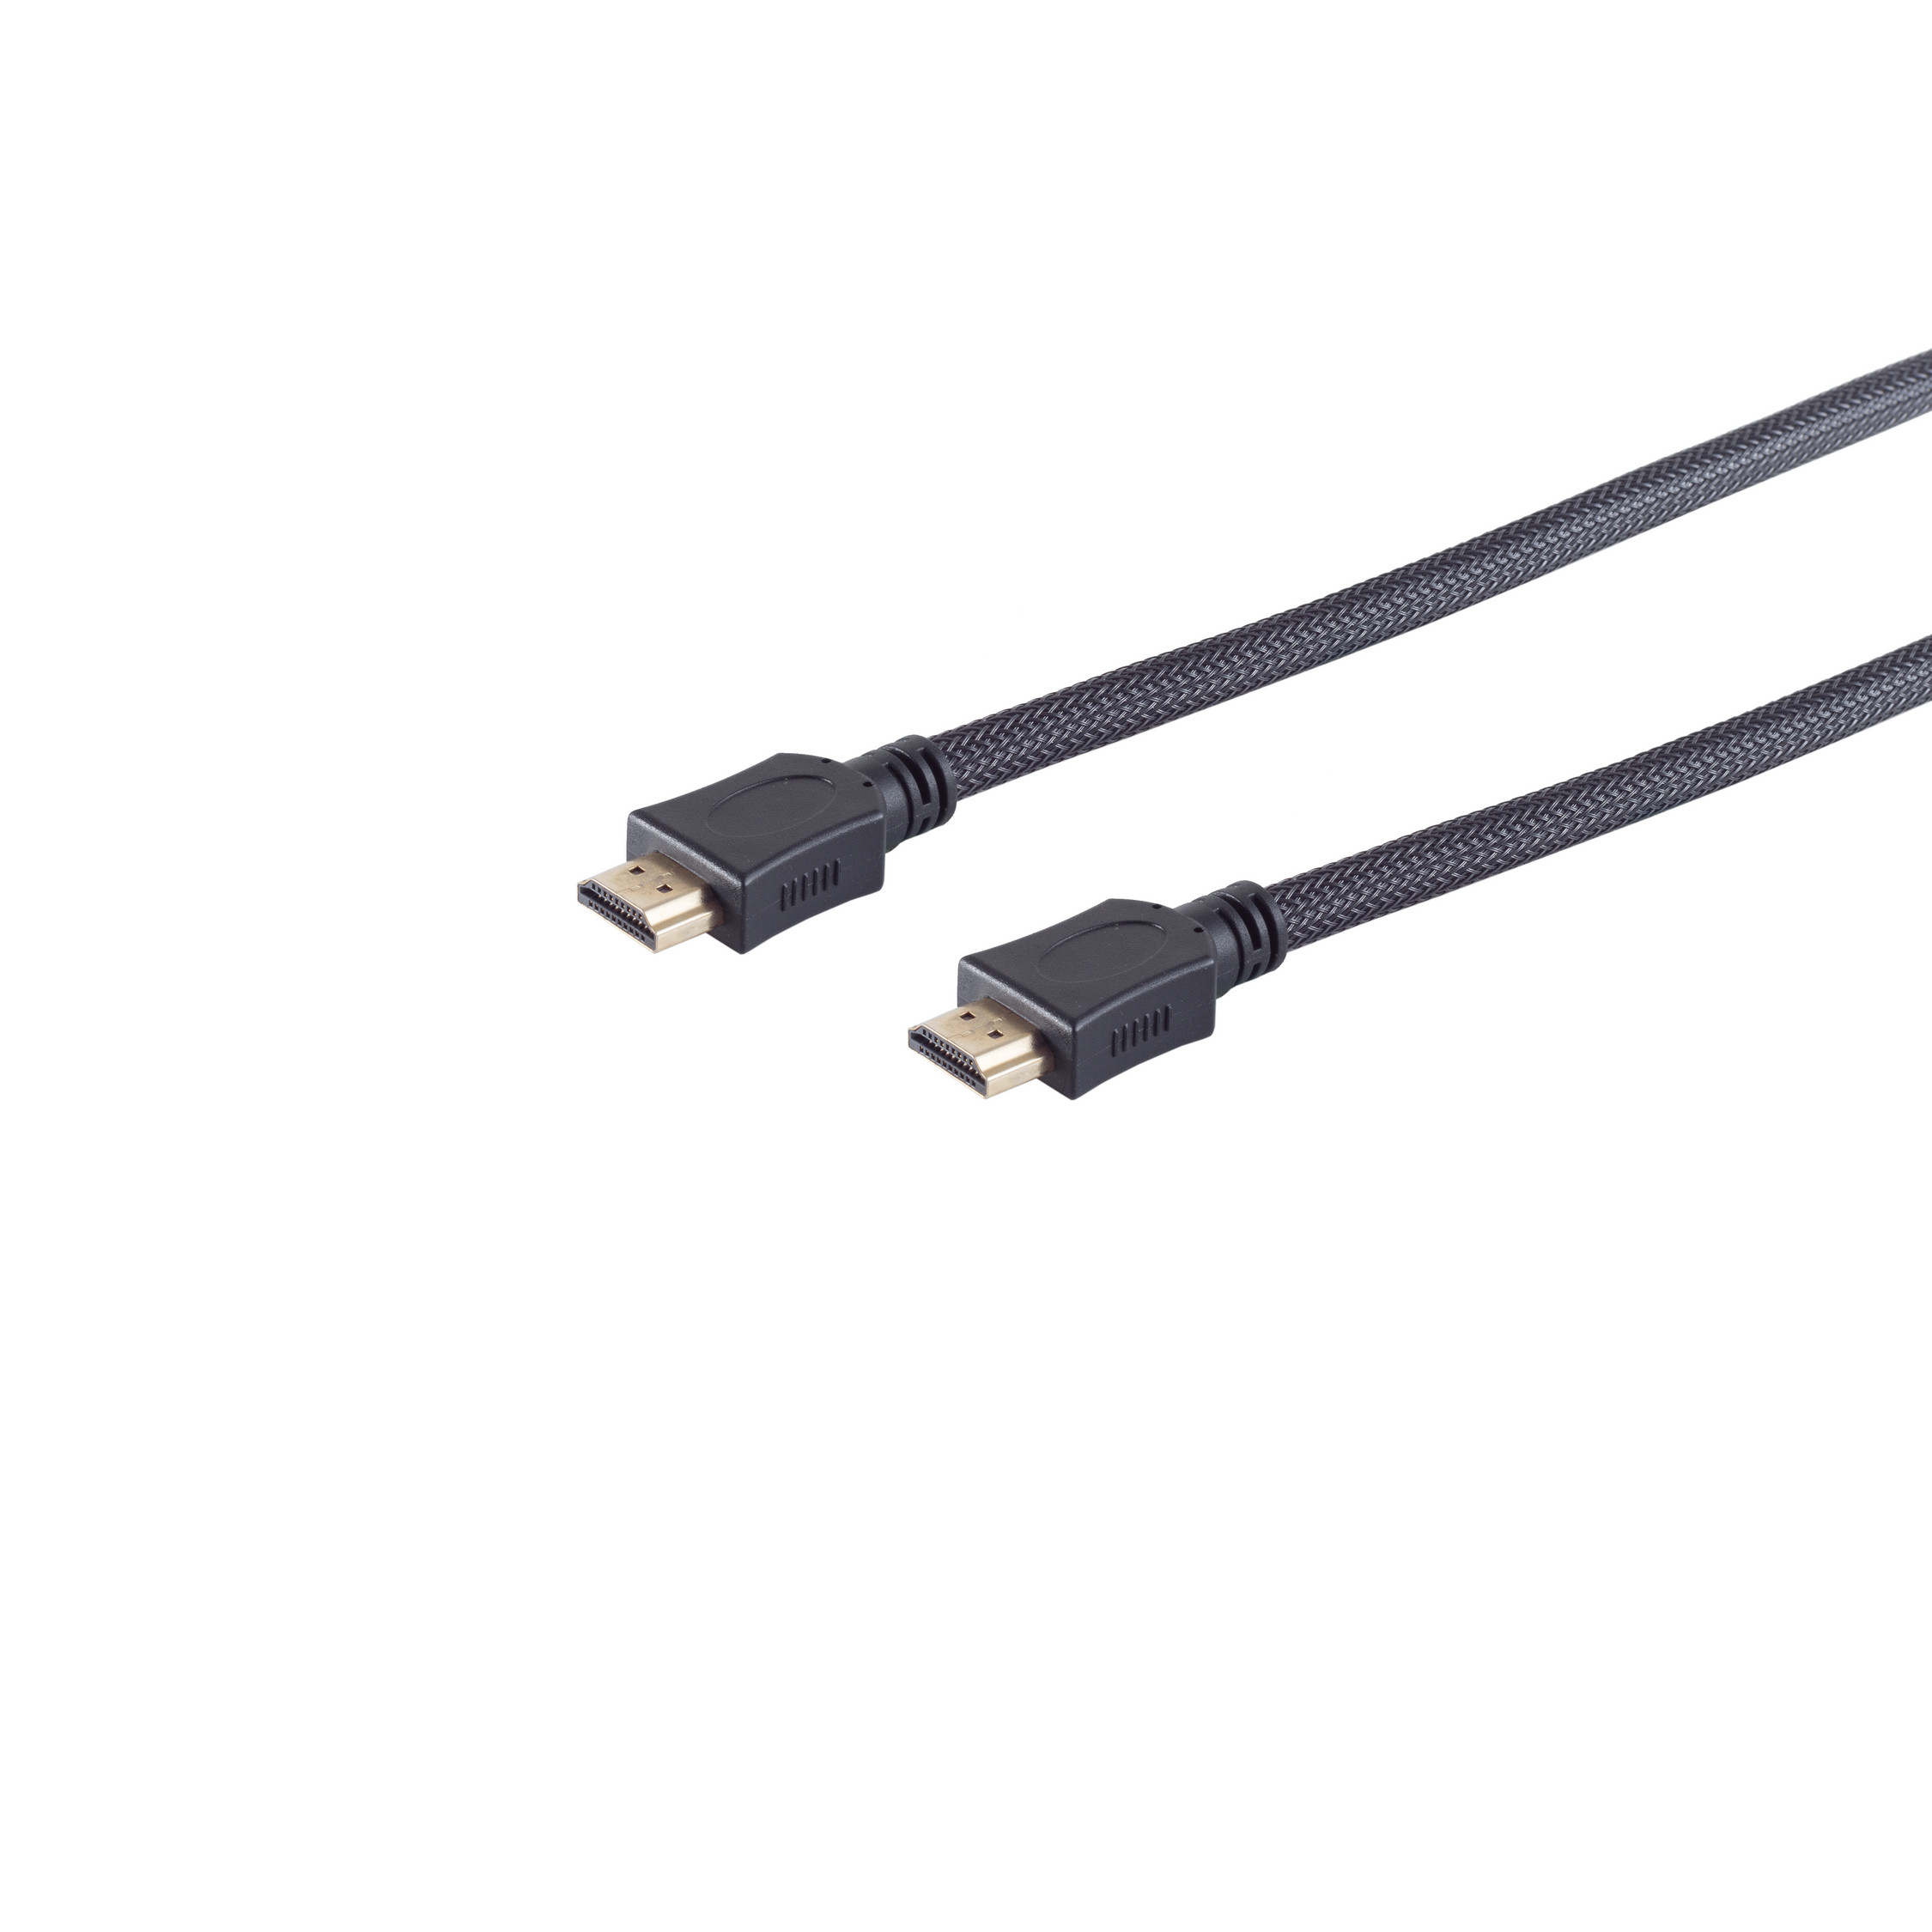 MAXIMUM A-St HDMI Kabel S/CONN sw CONNECTIVITY Nylon HEAC Mantel HDMI verg A-St/HDMI 1,5m